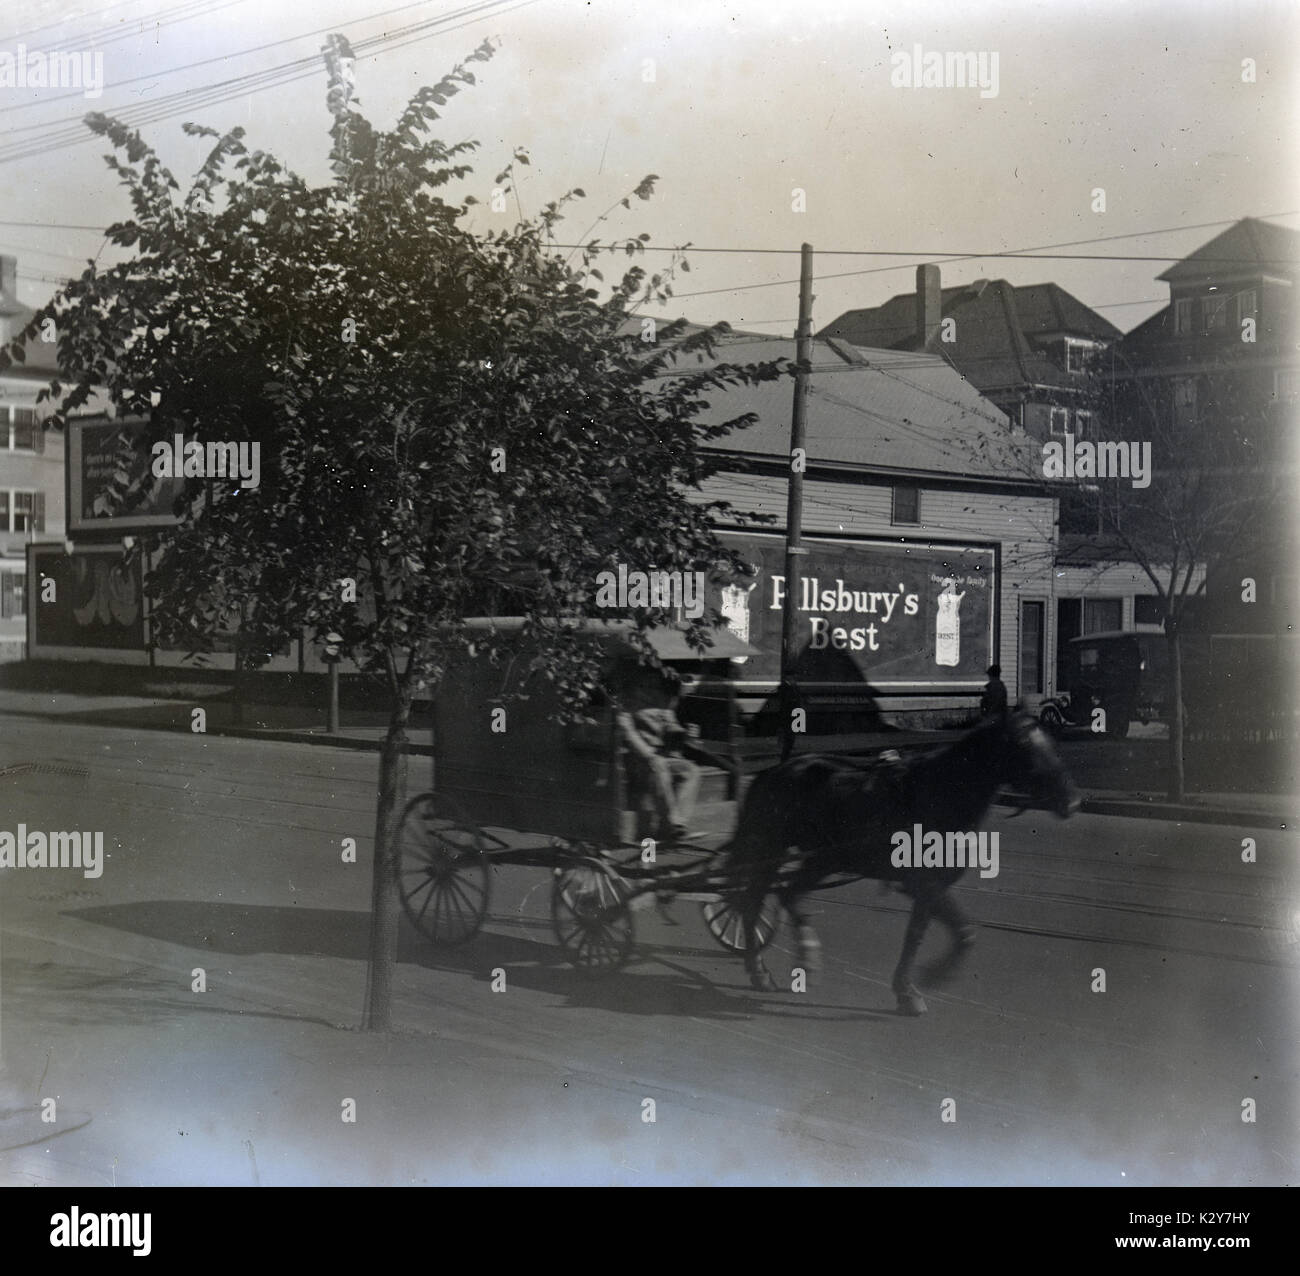 Meubles anciens c1910 photo, cheval et une charrette en face d'un des meilleurs Pillsbury billboard, zone résidentielle. Lieu inconnu, peut-être du Rhode Island, USA. SOURCE : photographie originale. Banque D'Images